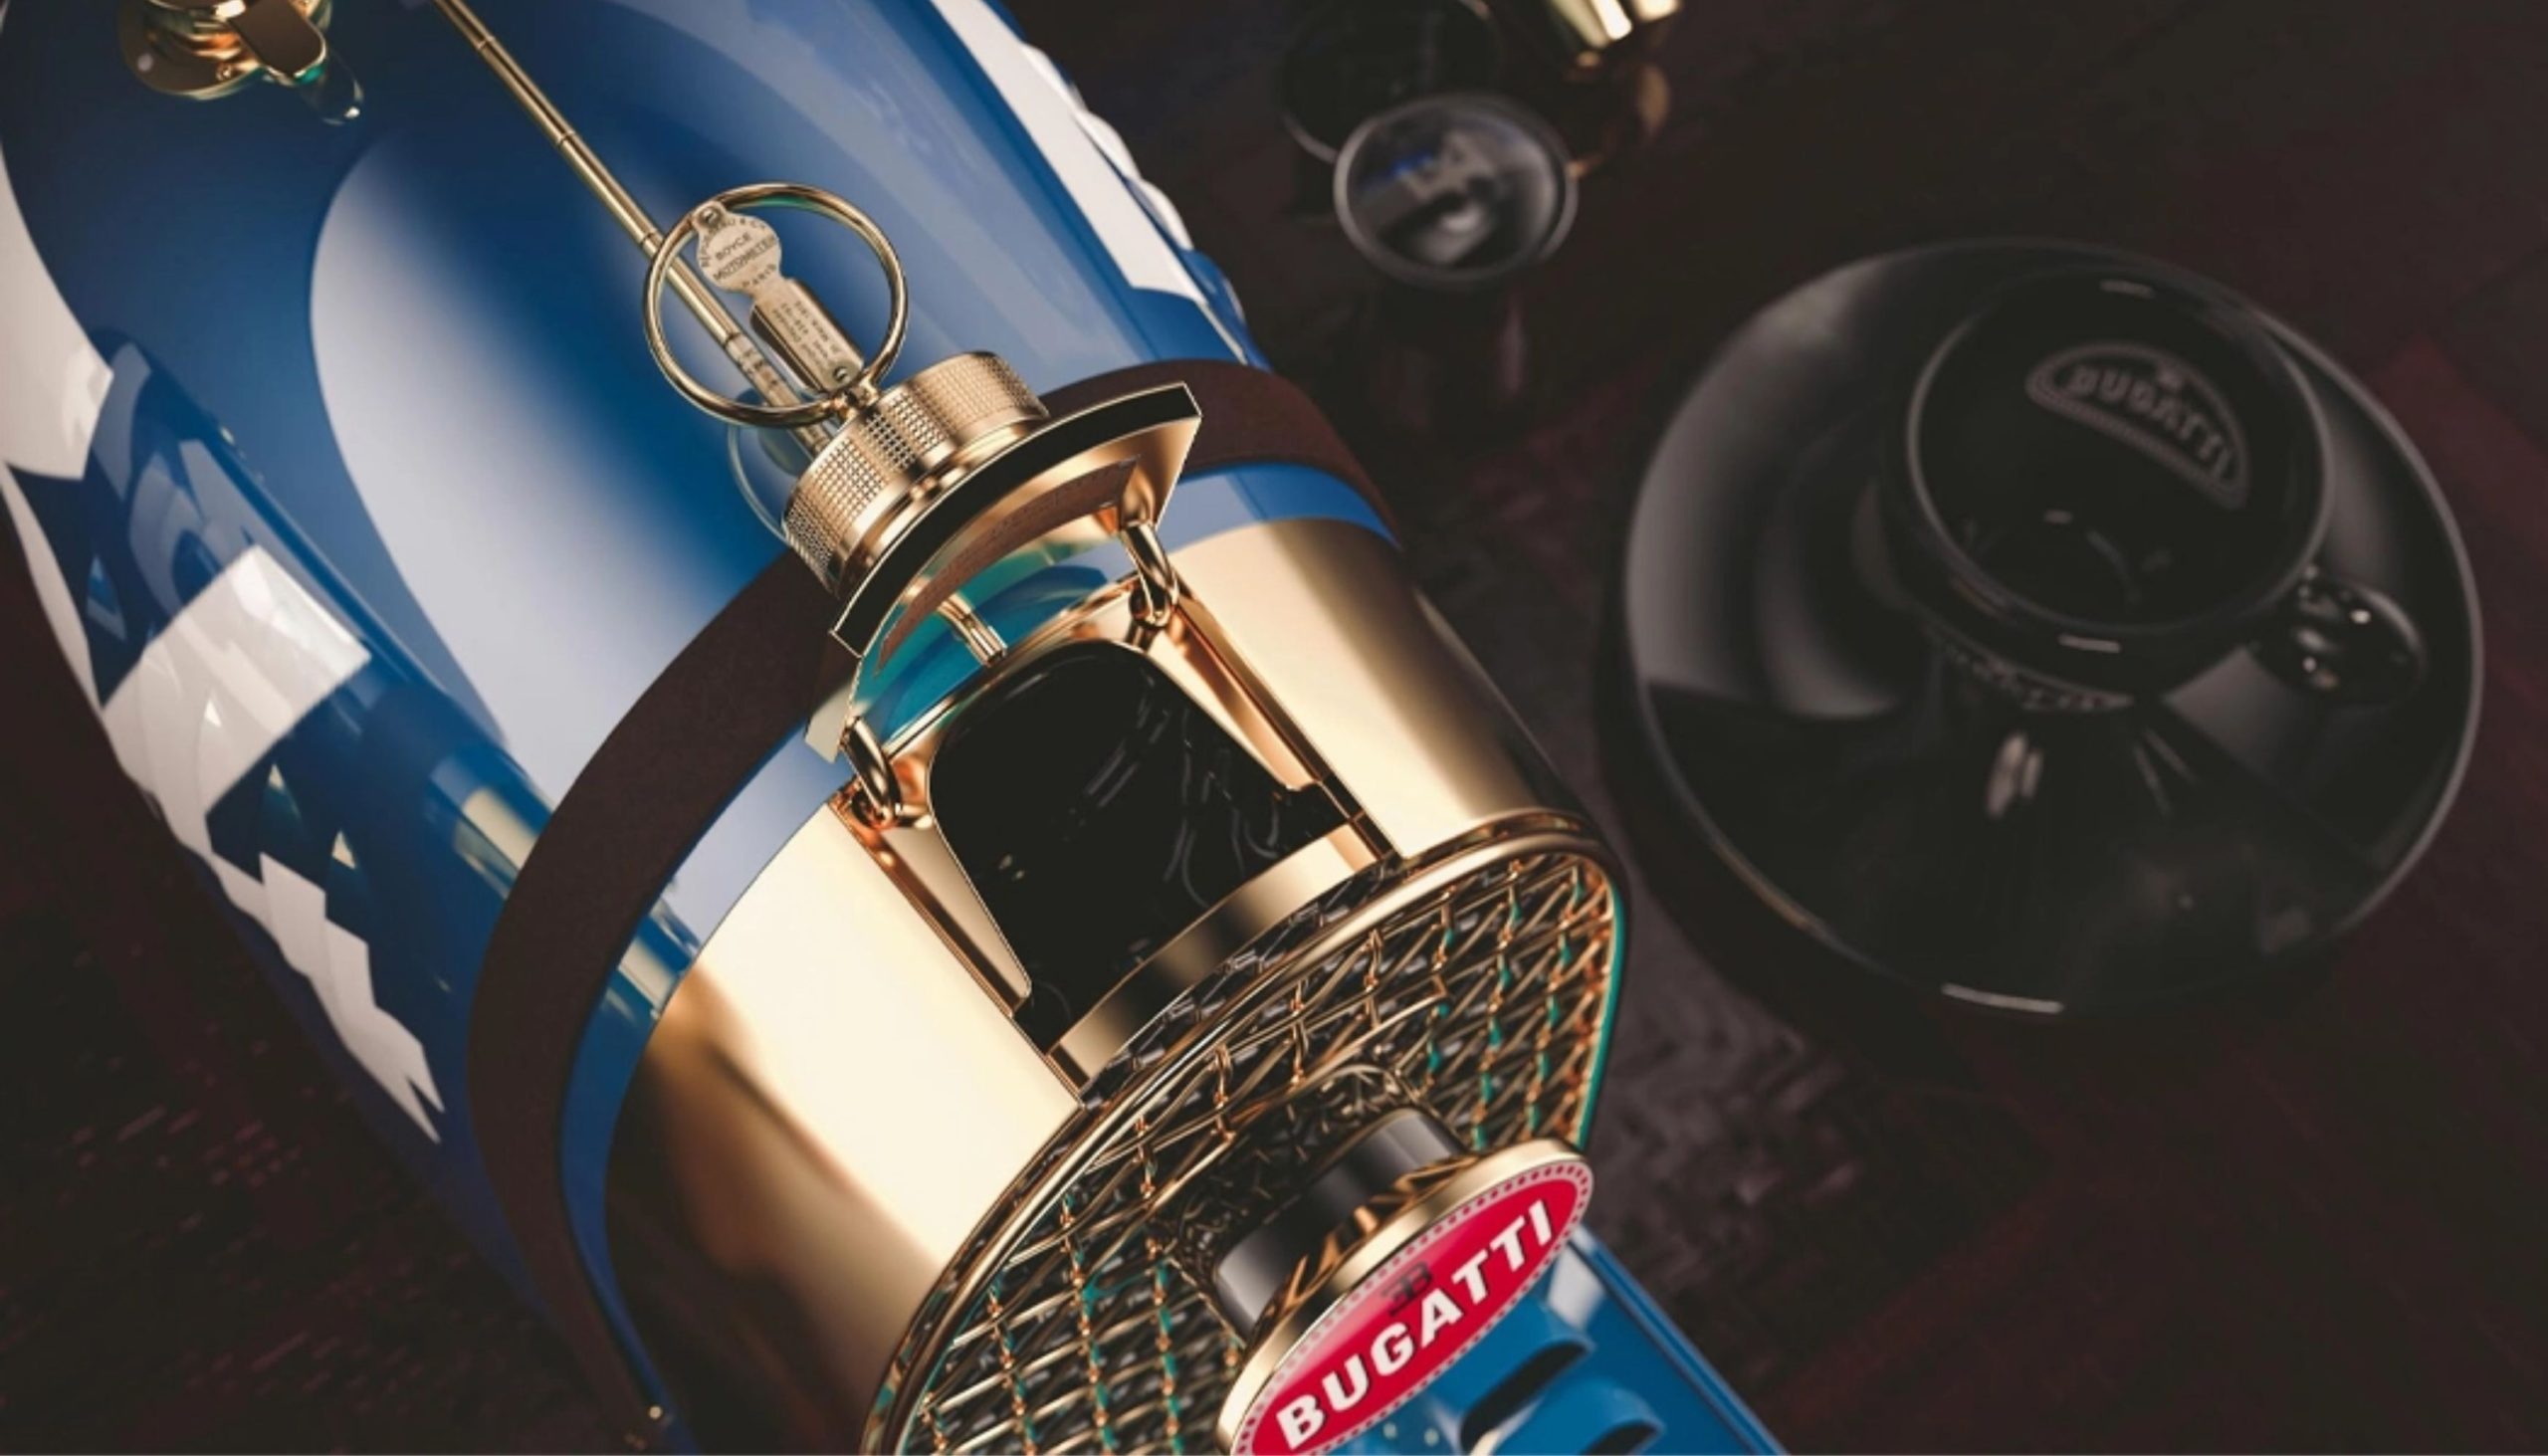 Bugatti Coffee Machine